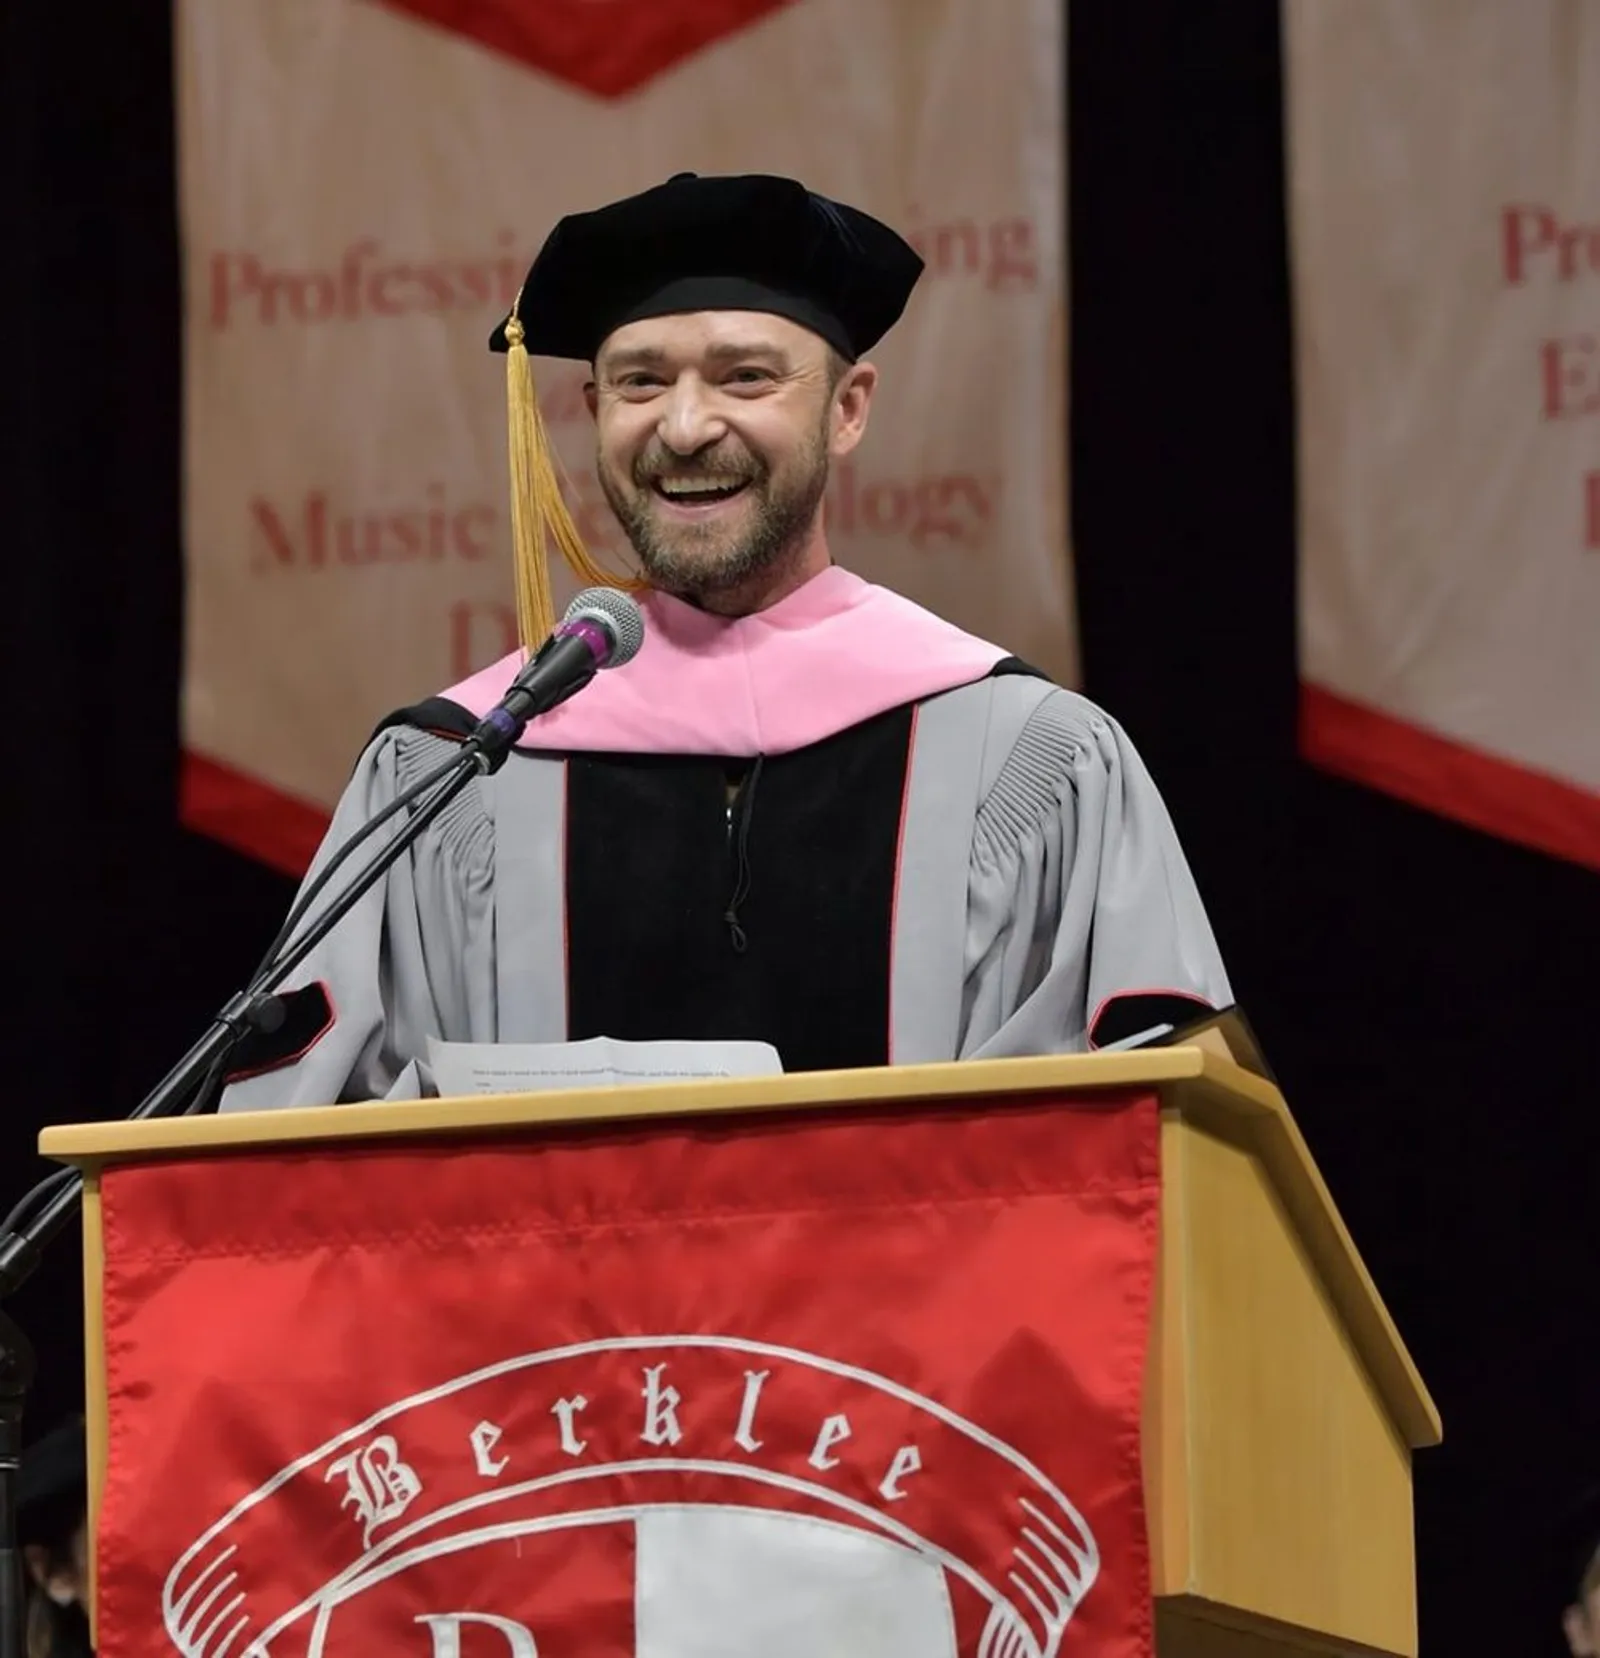 Dianggap Berpengaruh, Justin Timberlake Raih Gelar Doktor Bidang Musik